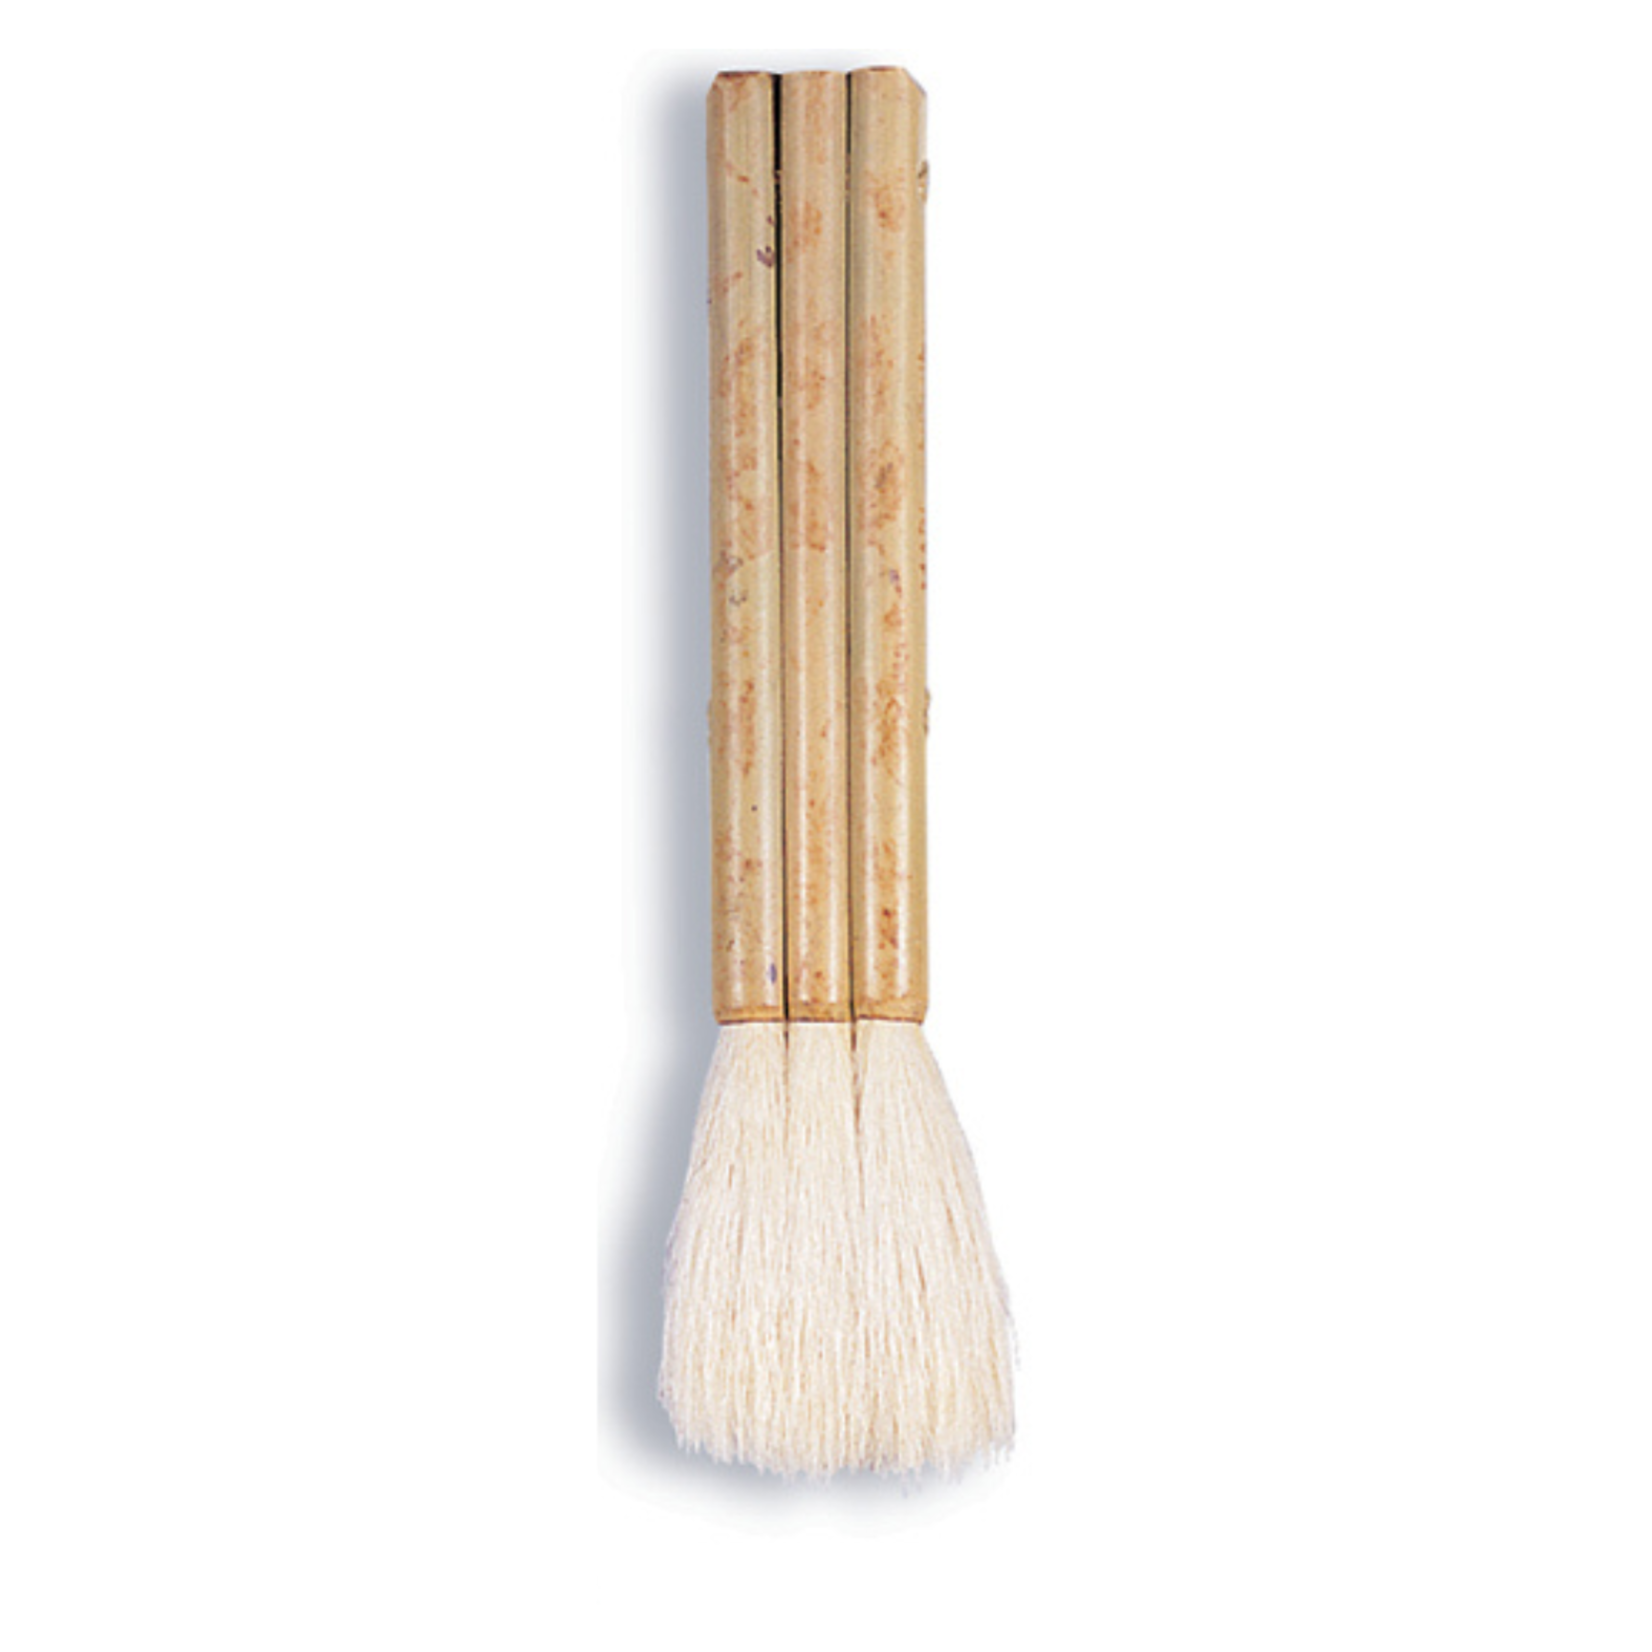 Yasutomo Flat Hake Brush - 3-1/4